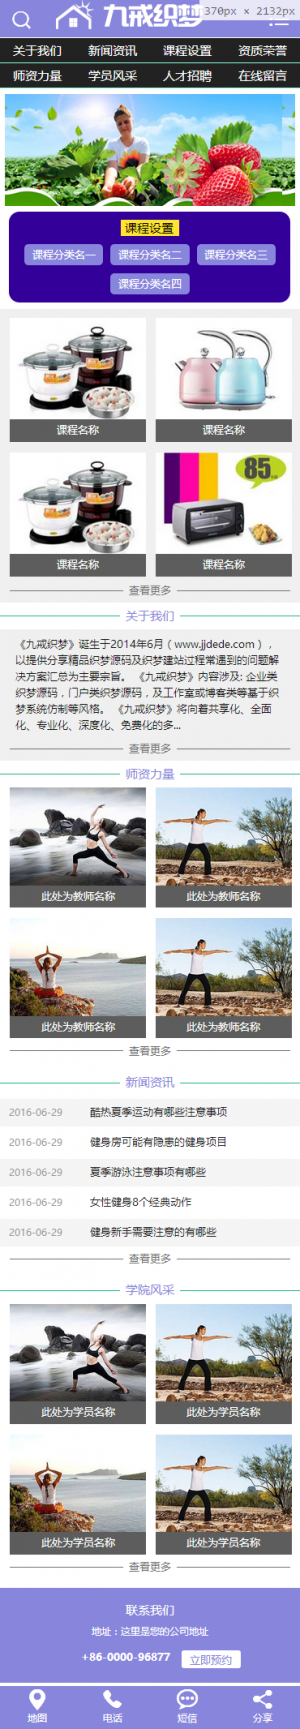 生活健身瑜伽类网站织梦模板(带手机版)手机端演示